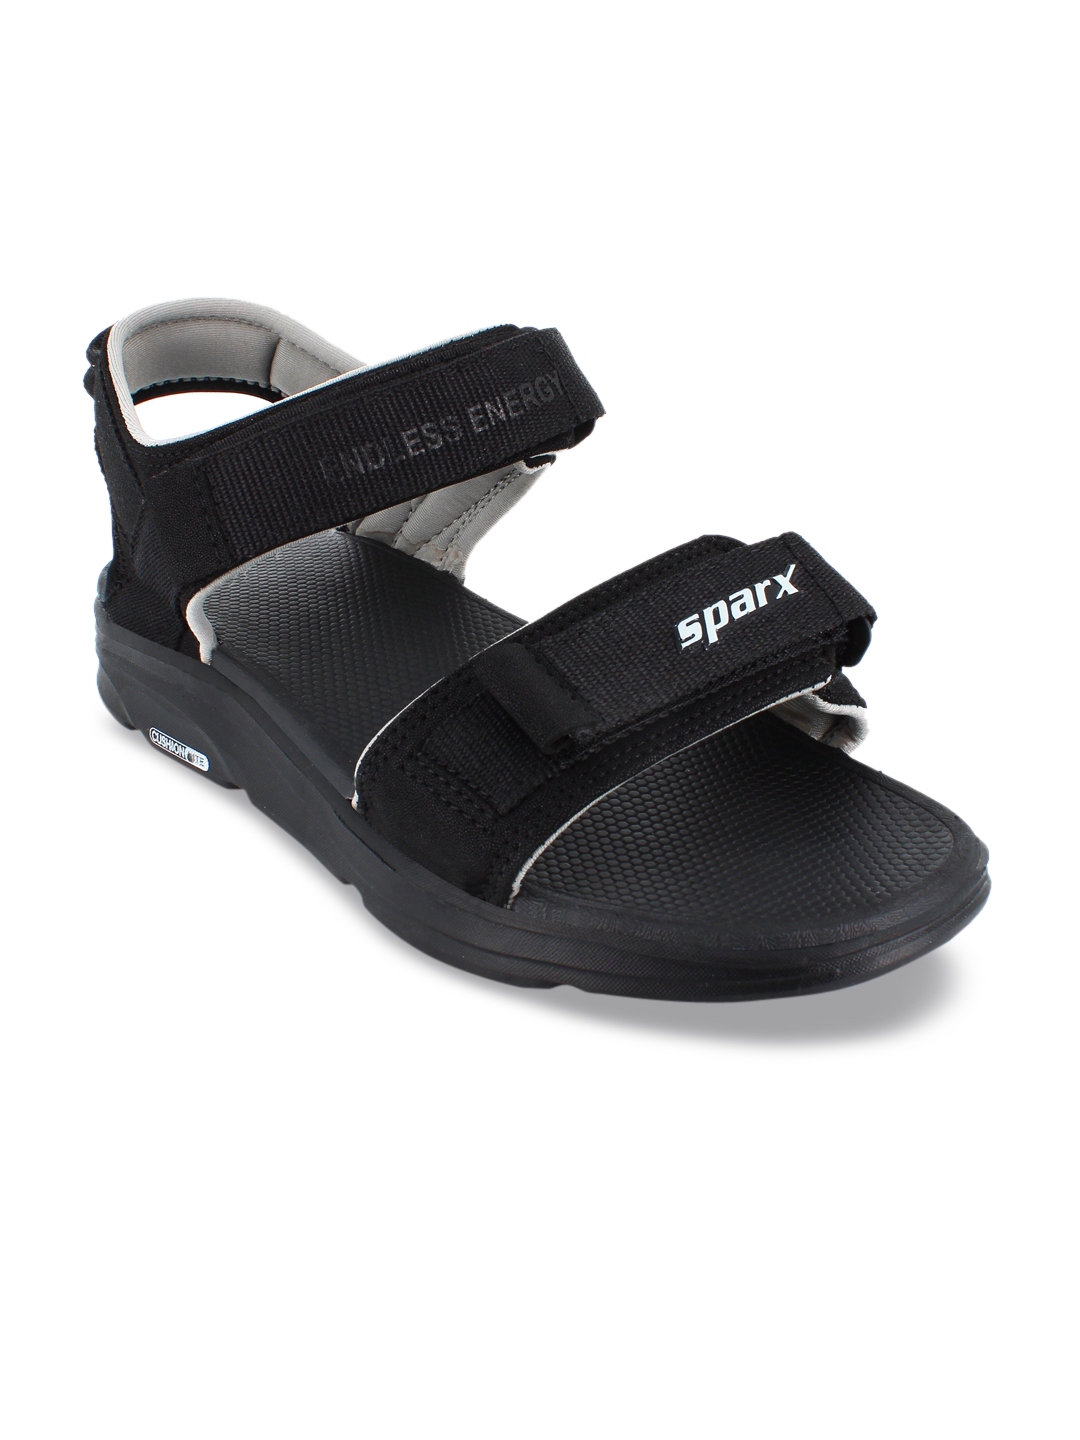 Buy Sparx Men Black Sports Sandals - Sports Sandals for Men 12329396 ...